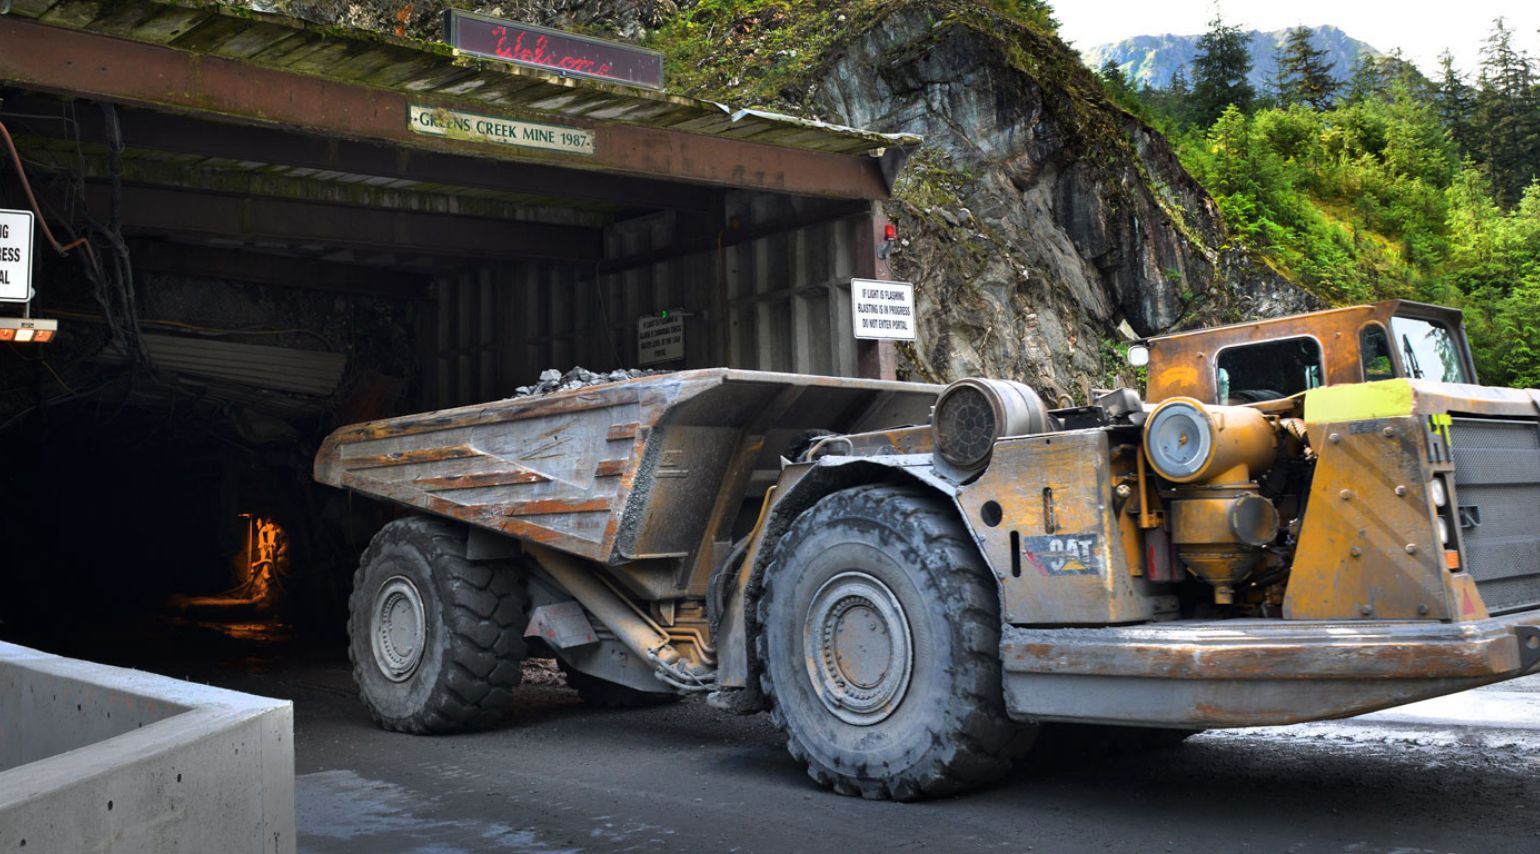 A mining truck.